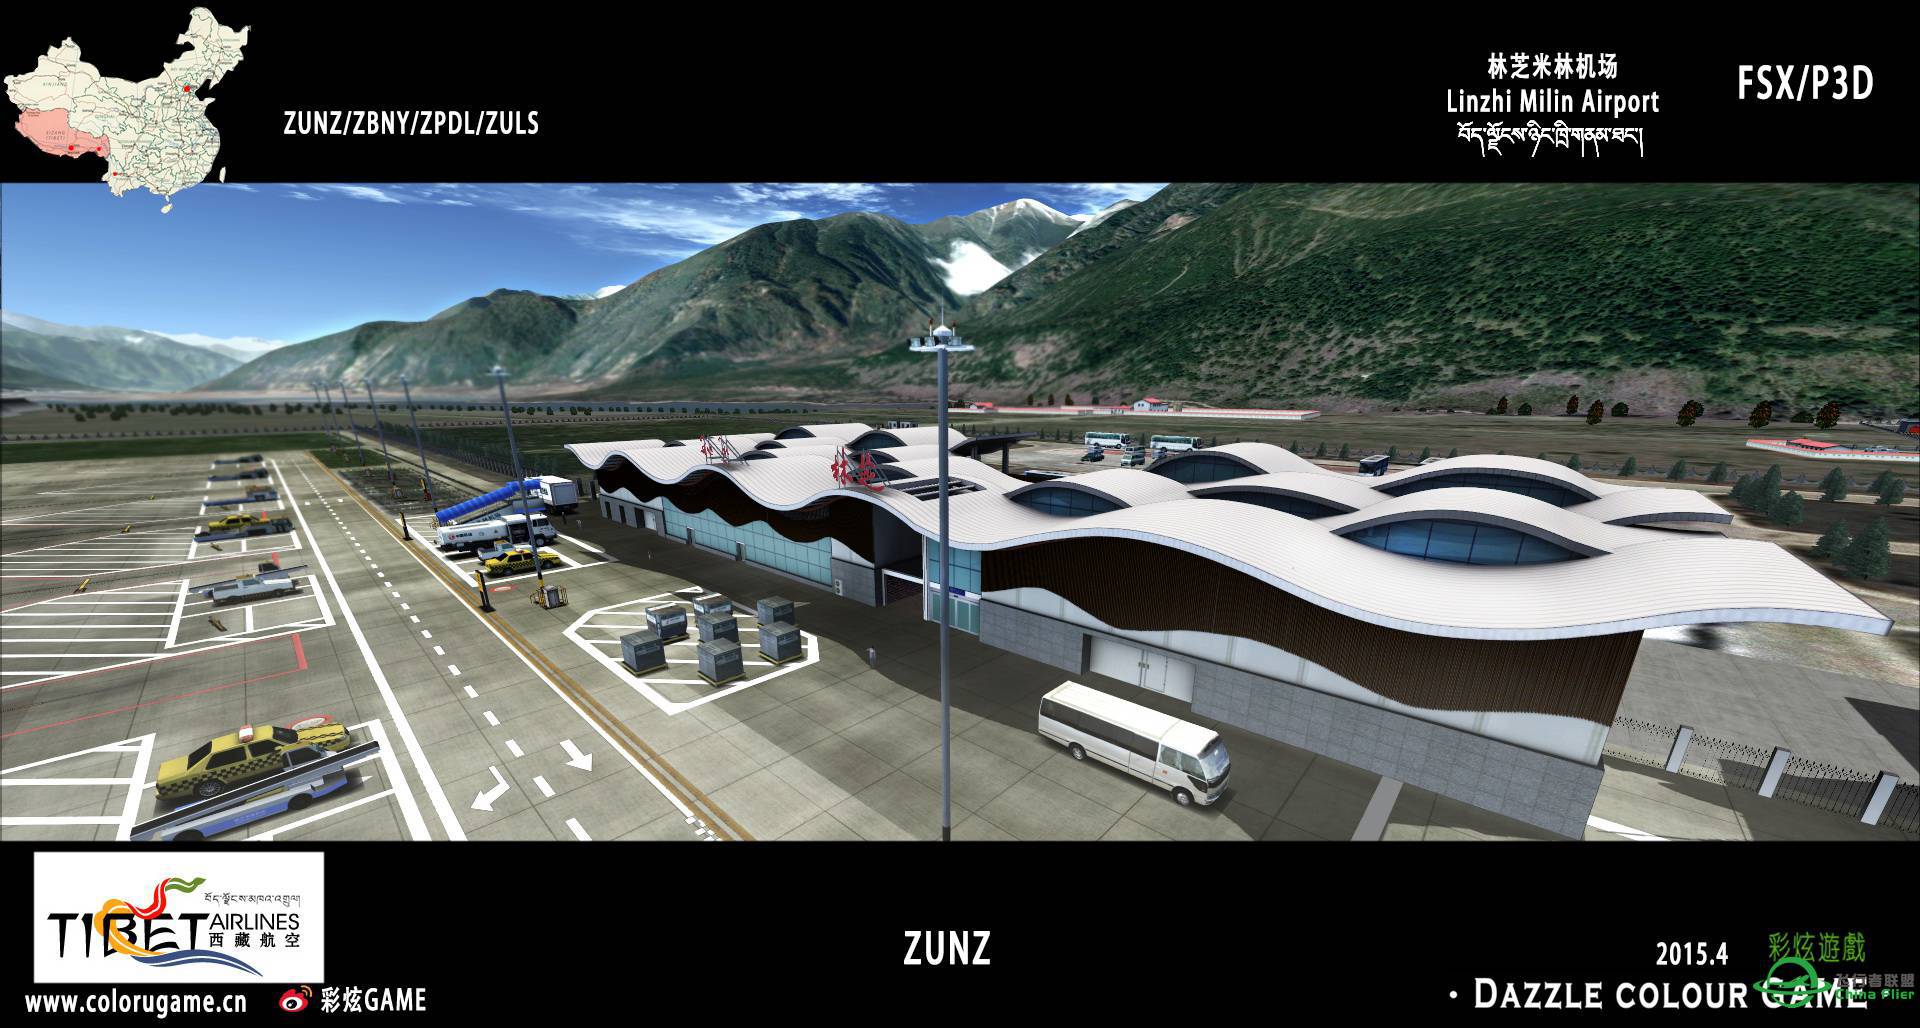 彩炫地景：林芝米林机场（ZUNZ）正式发布！-5799 